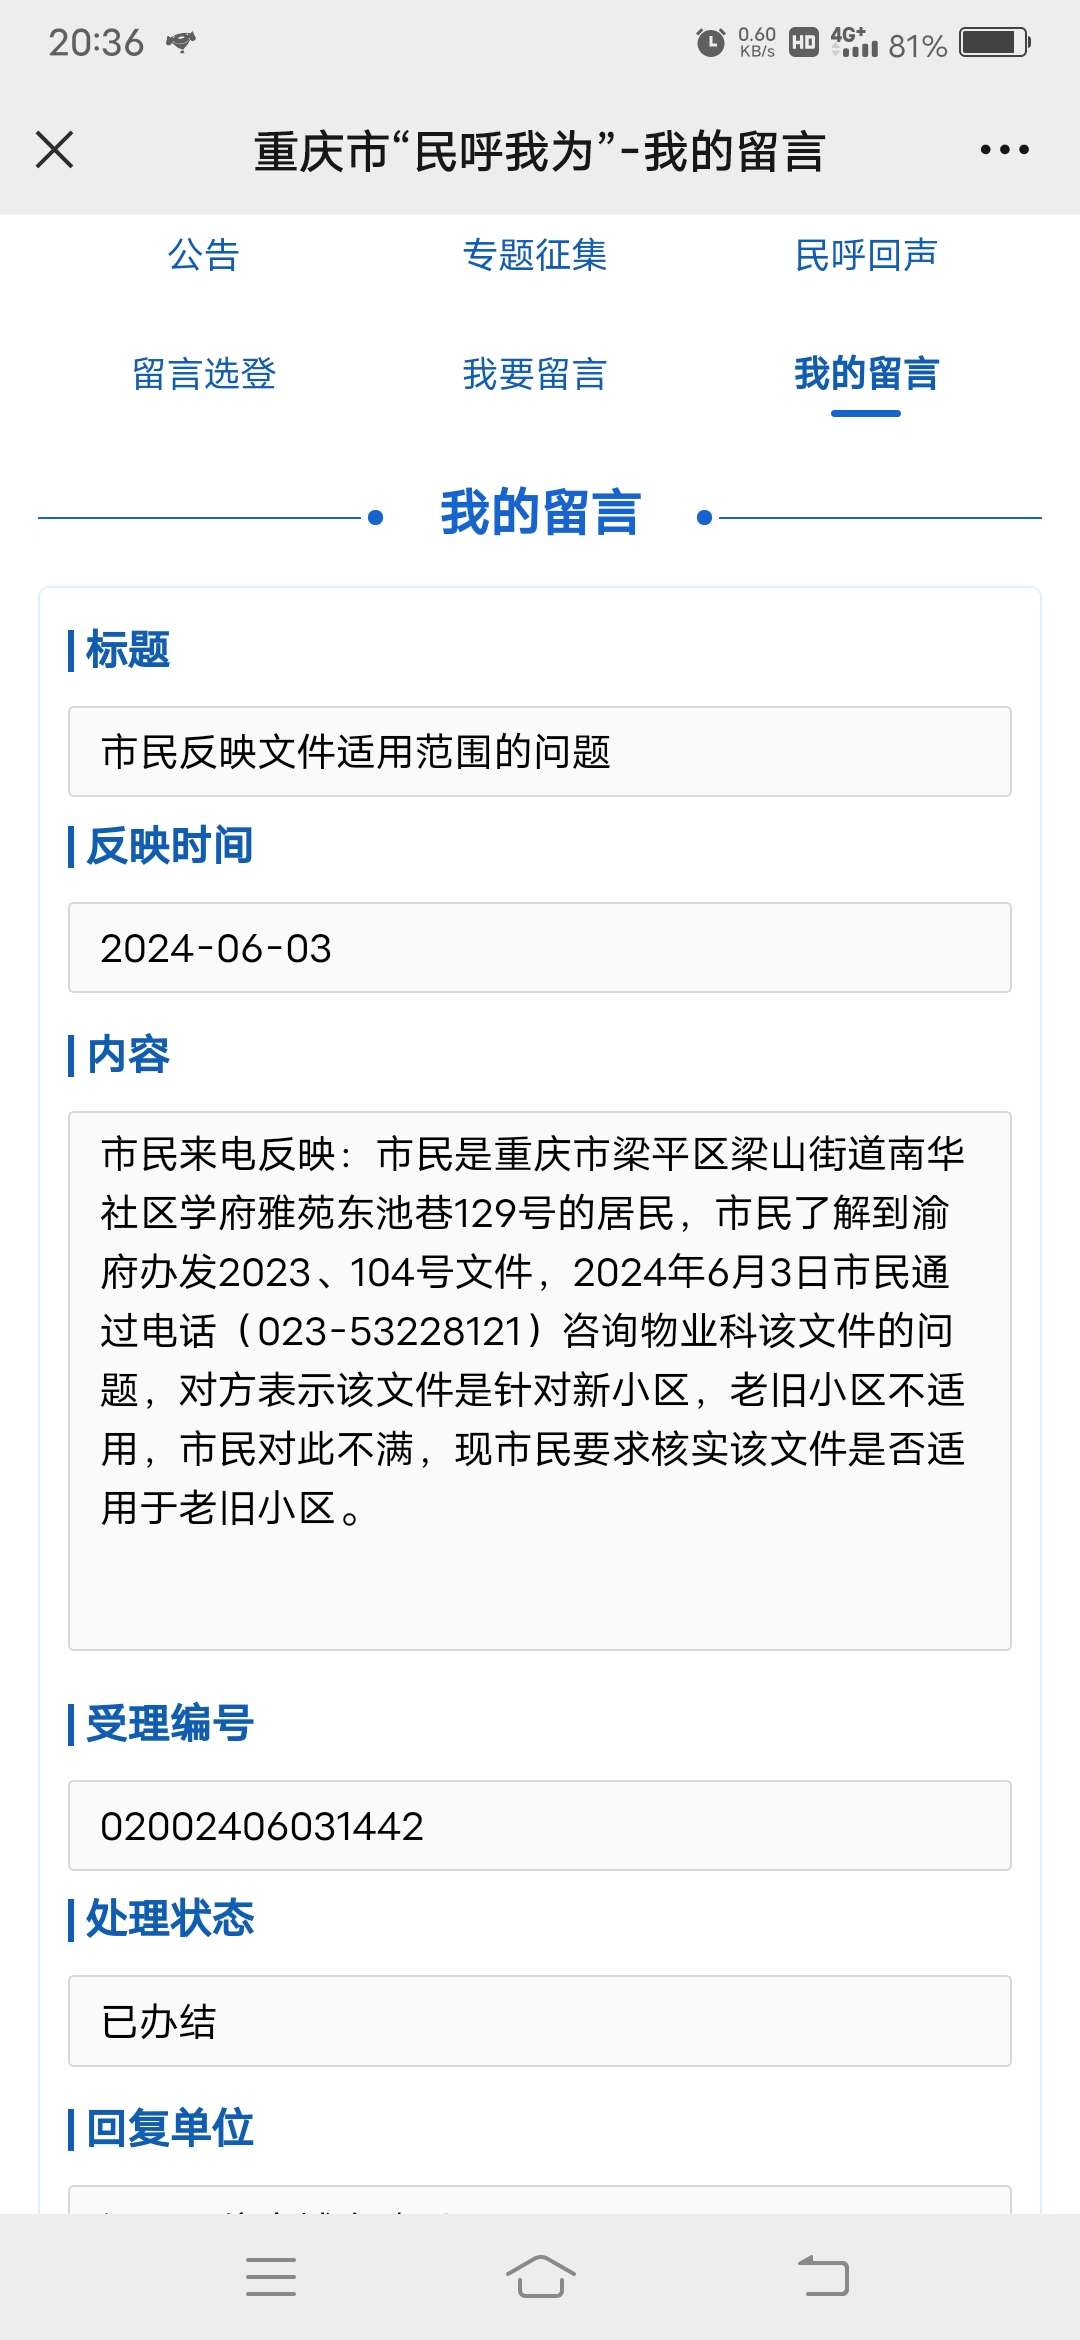 渝府办发2023(104号)重庆市物业服务收费管理办法。